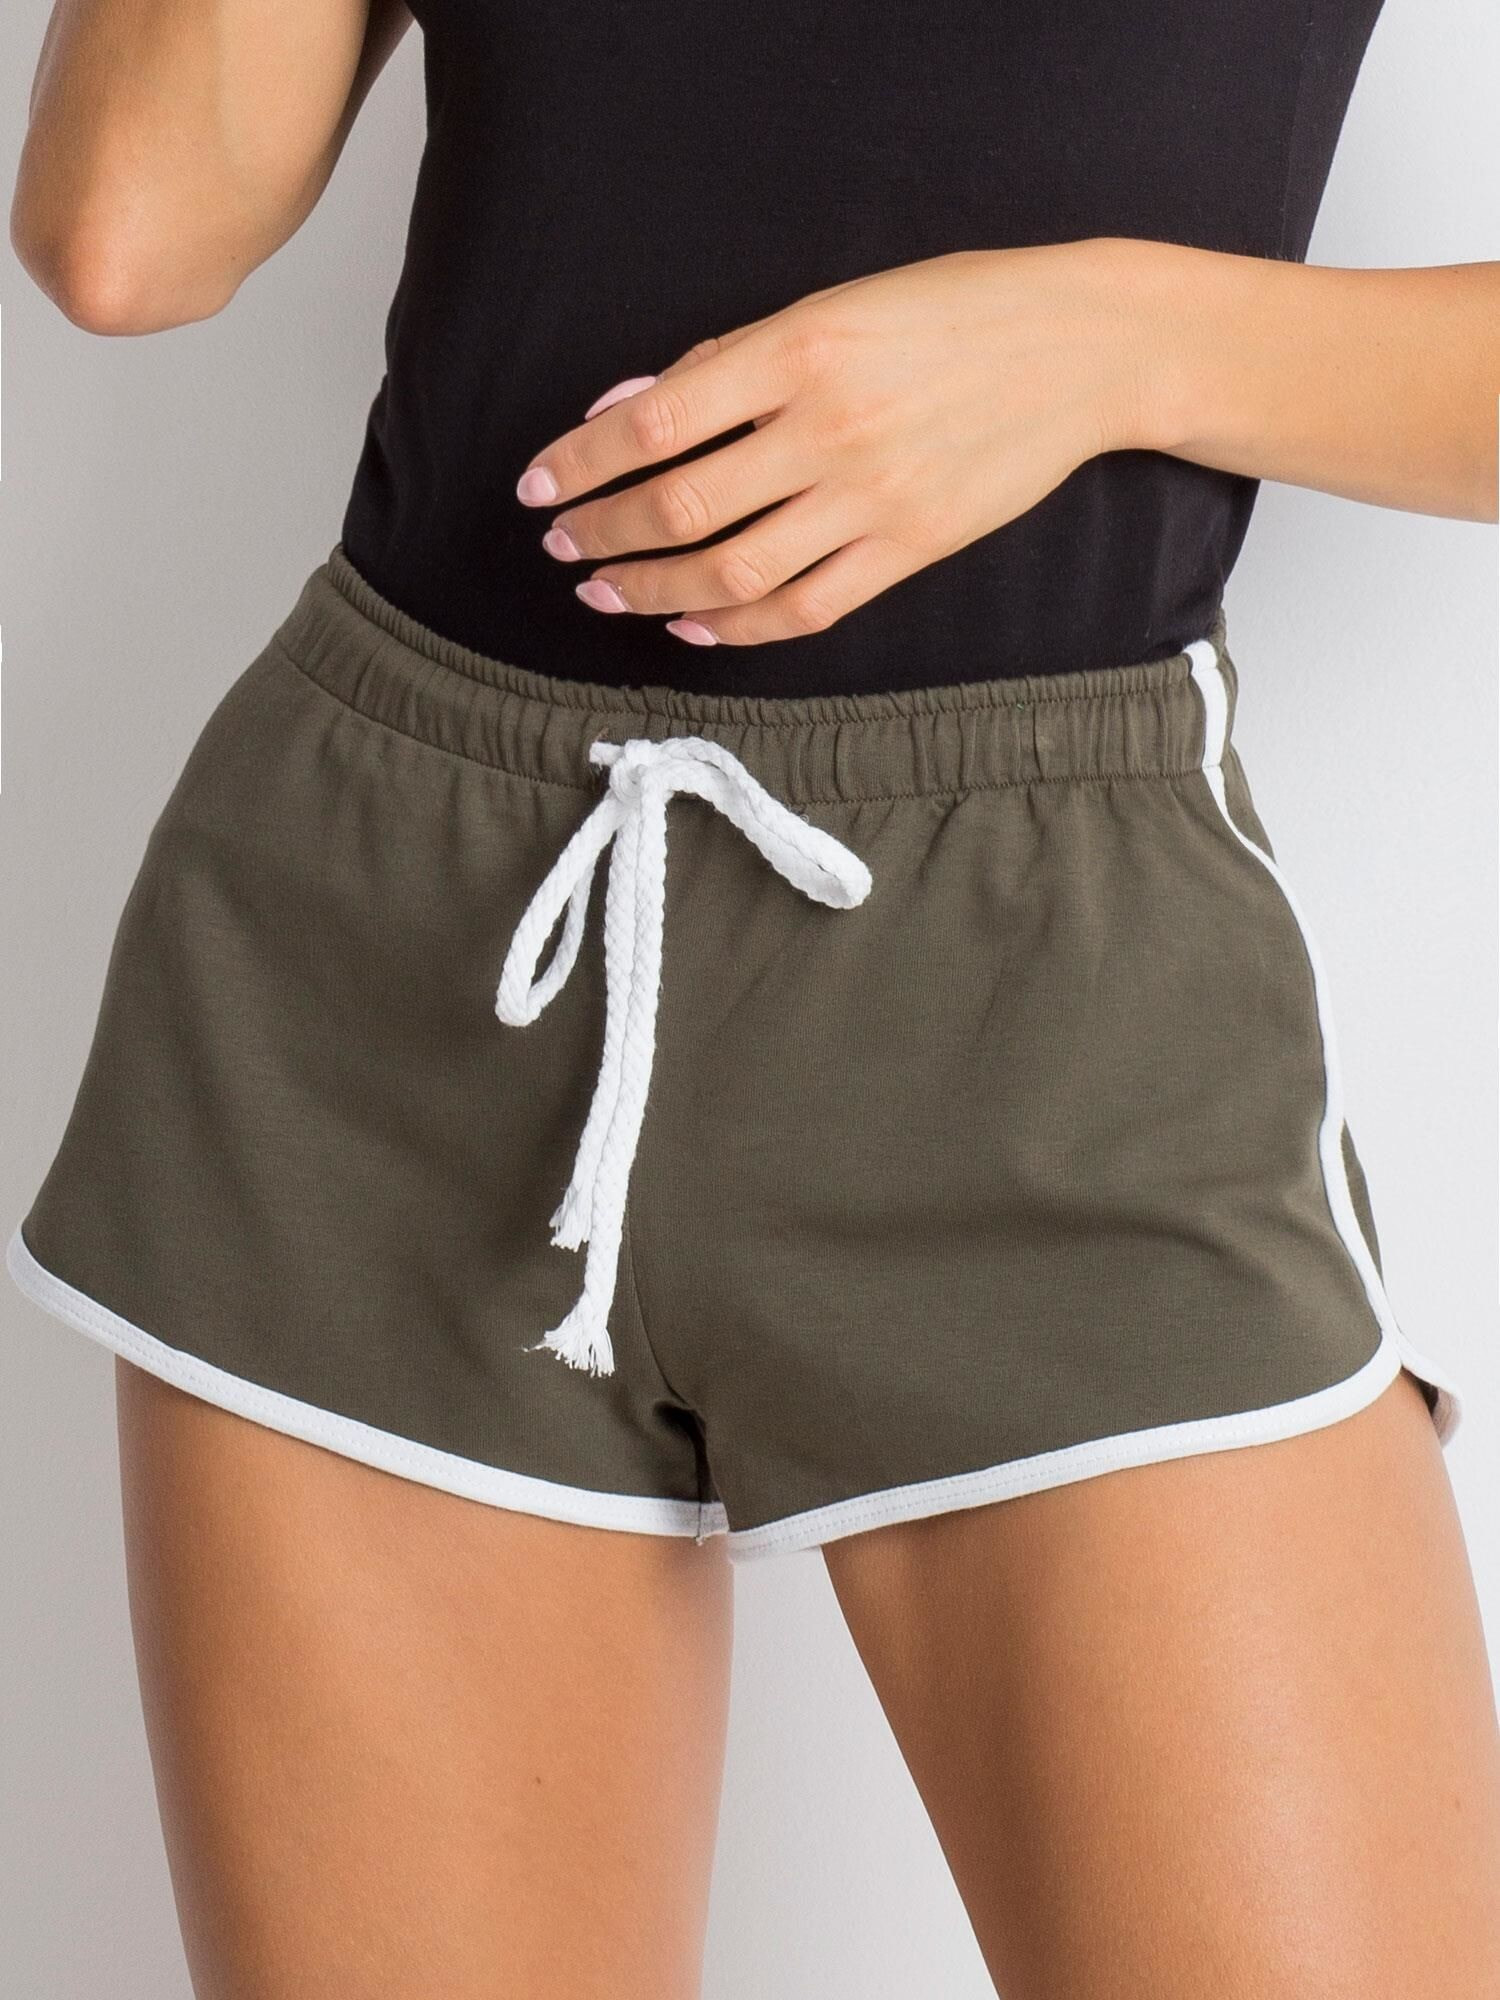 Женские спортивные шорты  Factory Price  на талии на резинке с шнуром, с лампасами